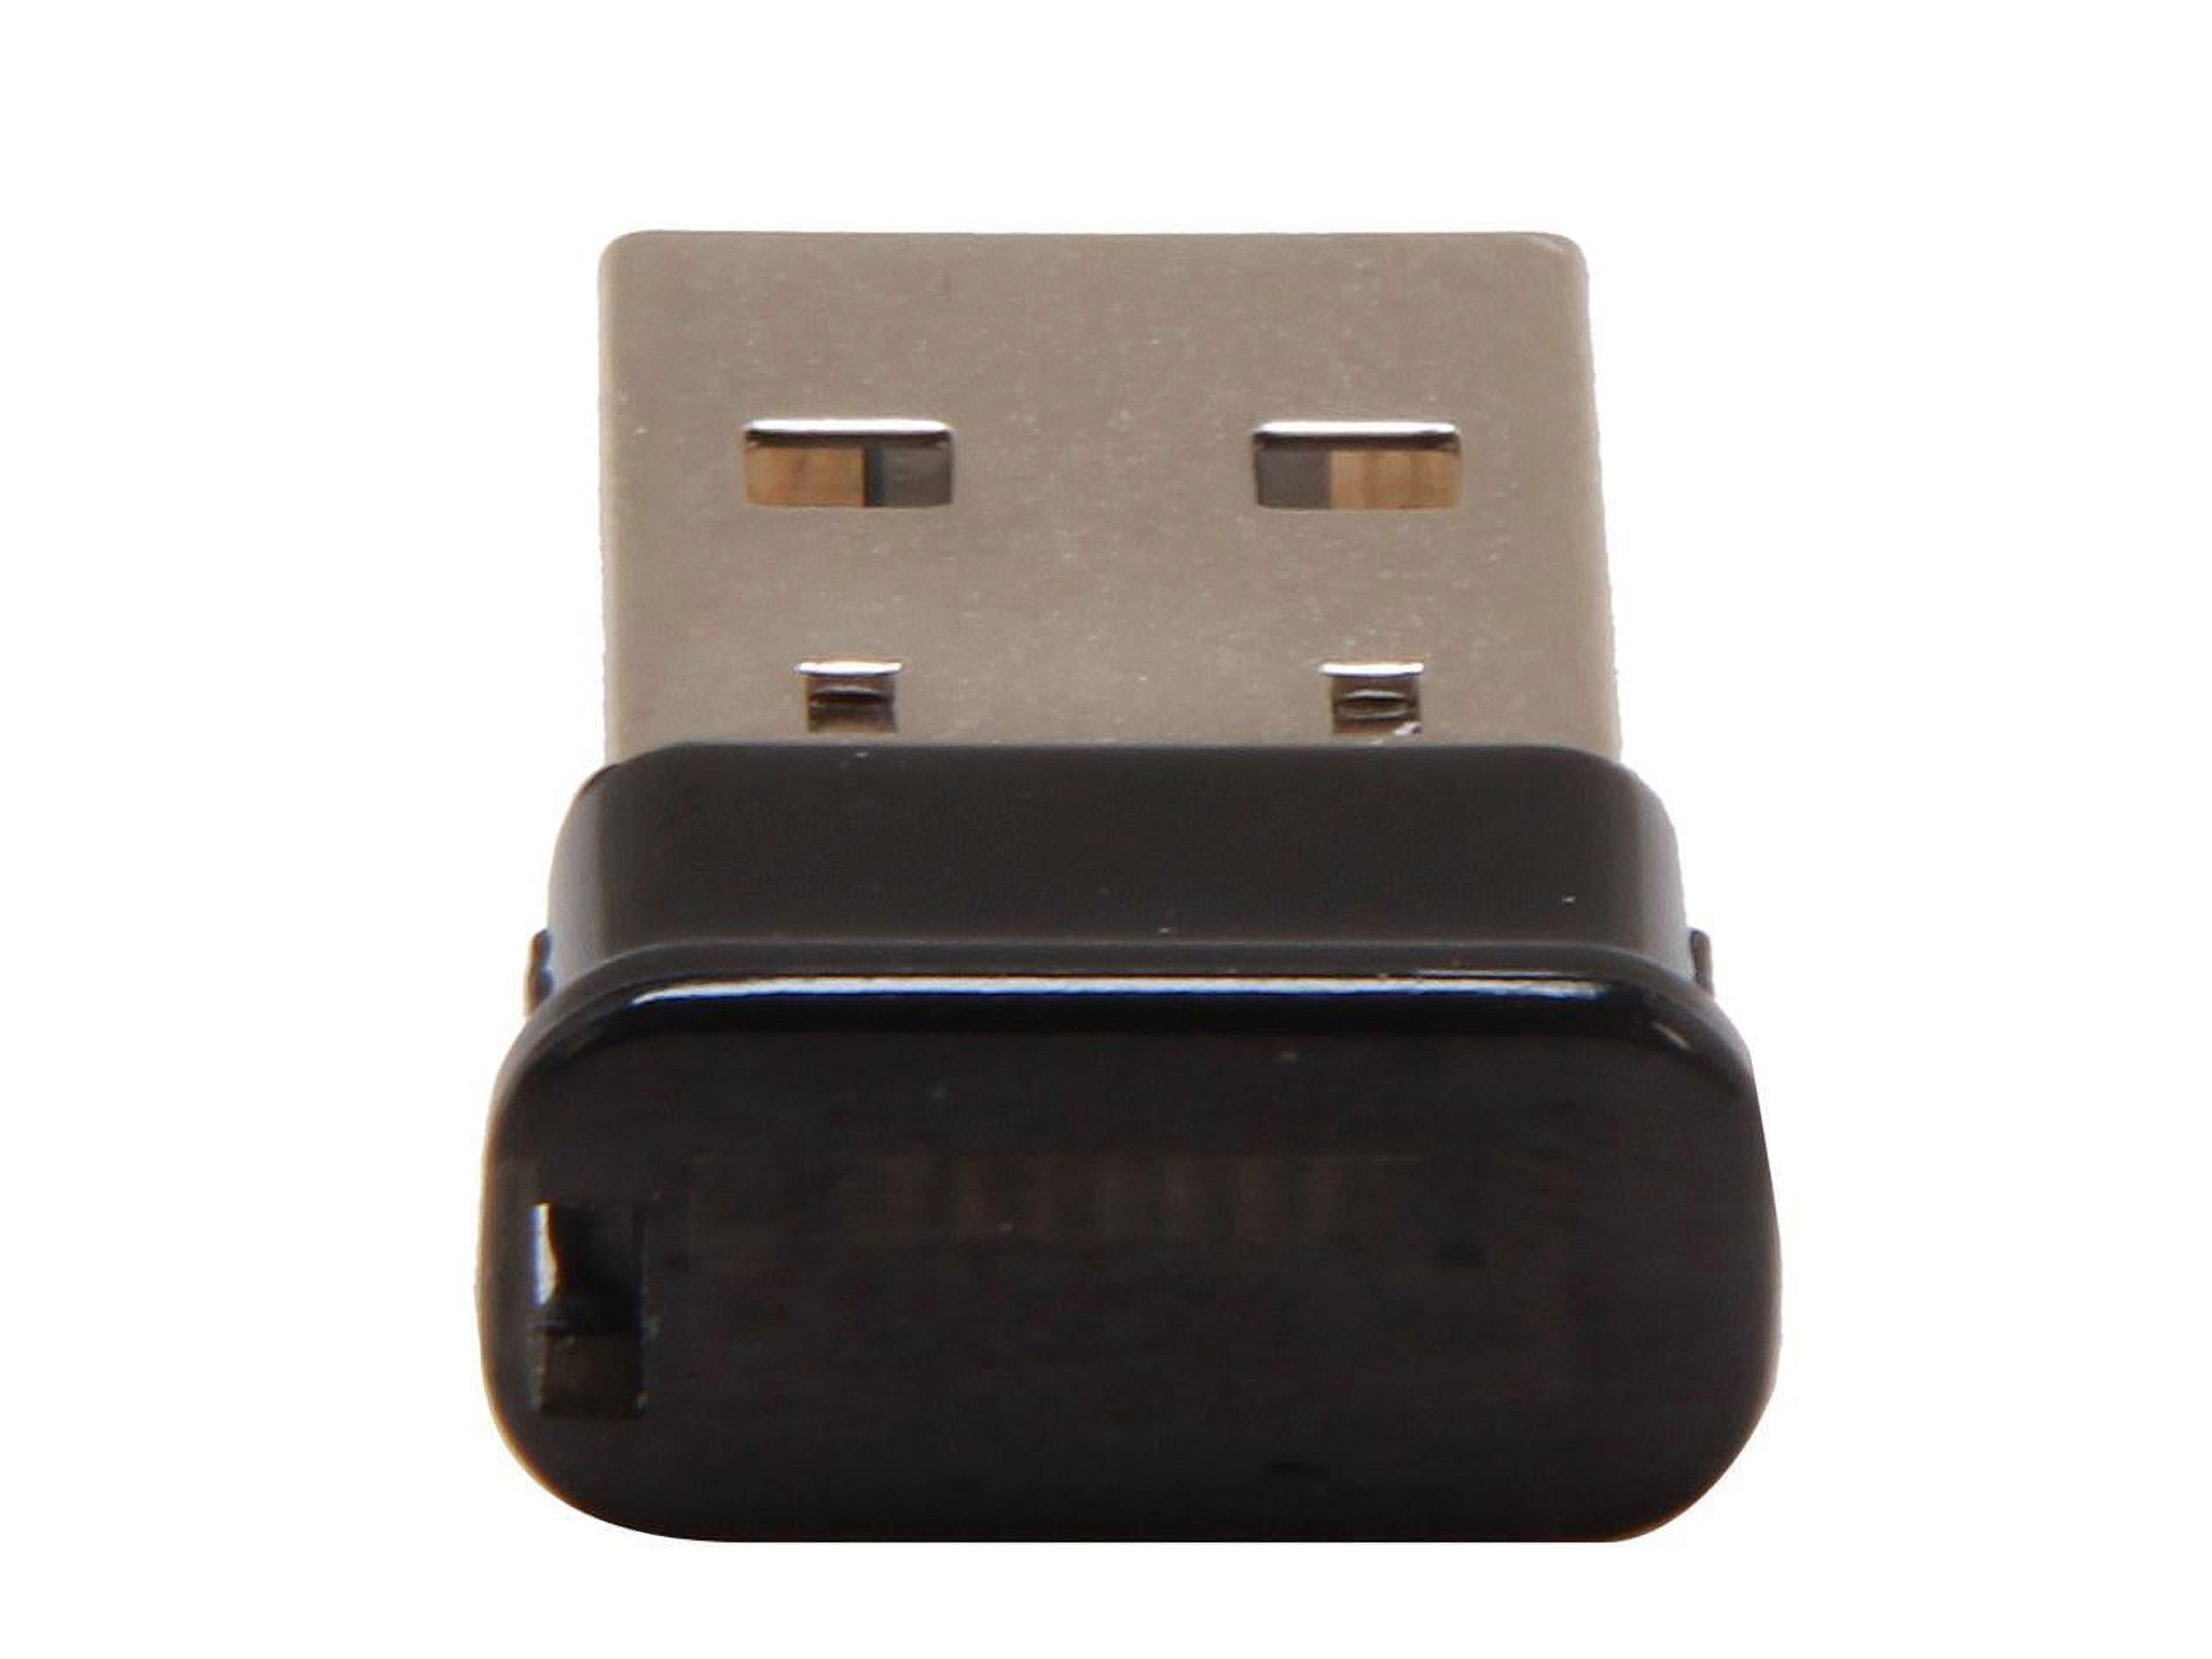 StarTech USBBT1EDR2 Mini USB Bluetooth 2.1 Adapter - Class 1 EDR Wireless Network Adapter - image 2 of 5